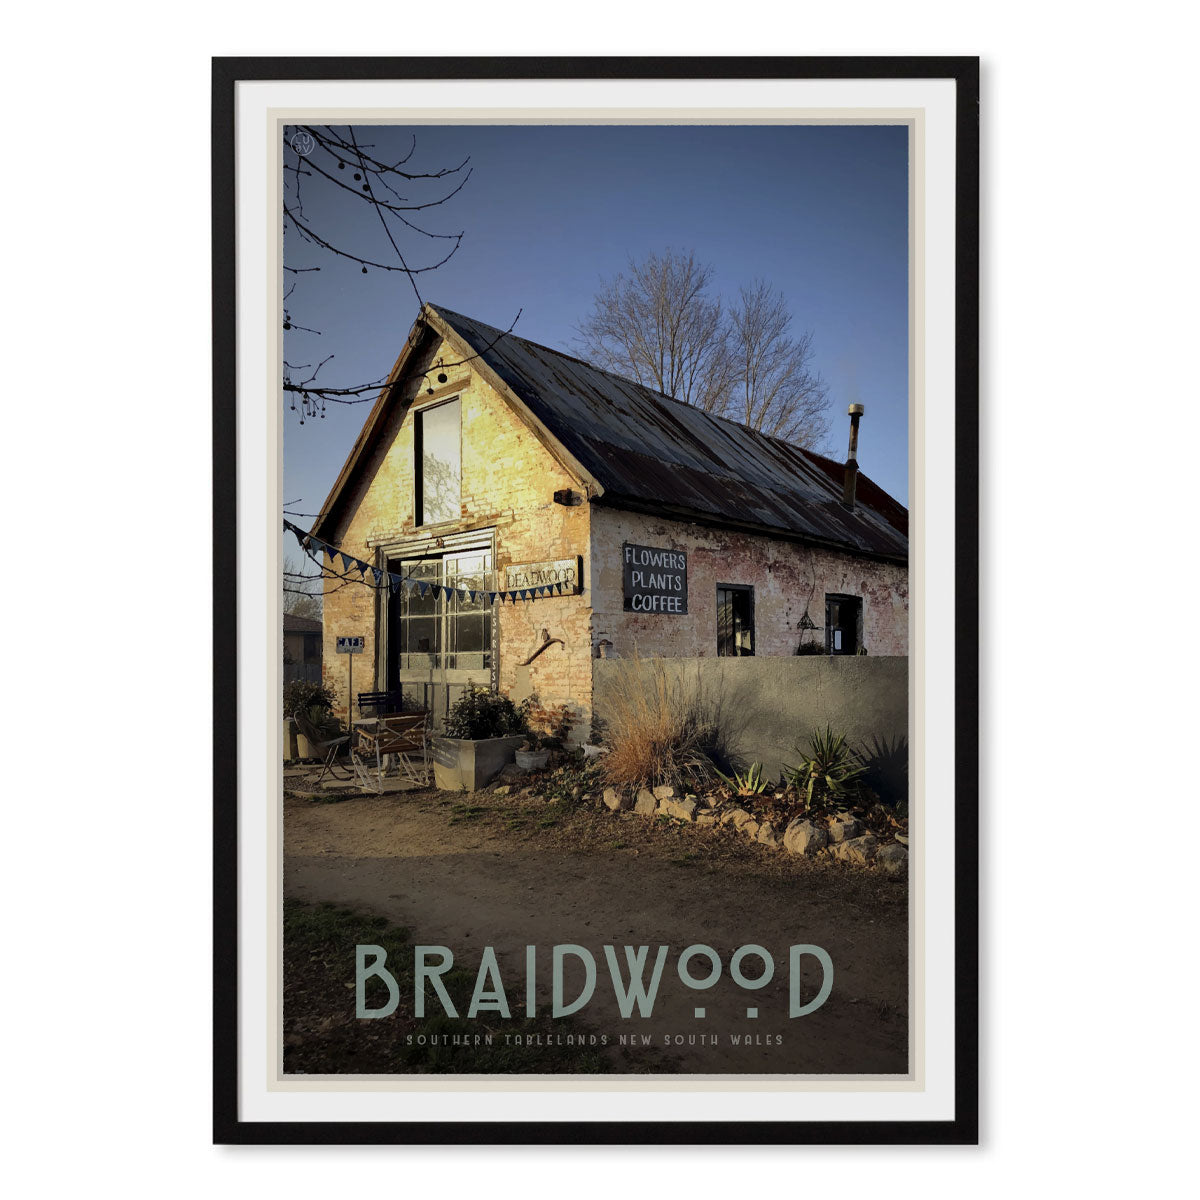 Braidwood cafe black framed vintage travel style poster. Original design by Places We Luv